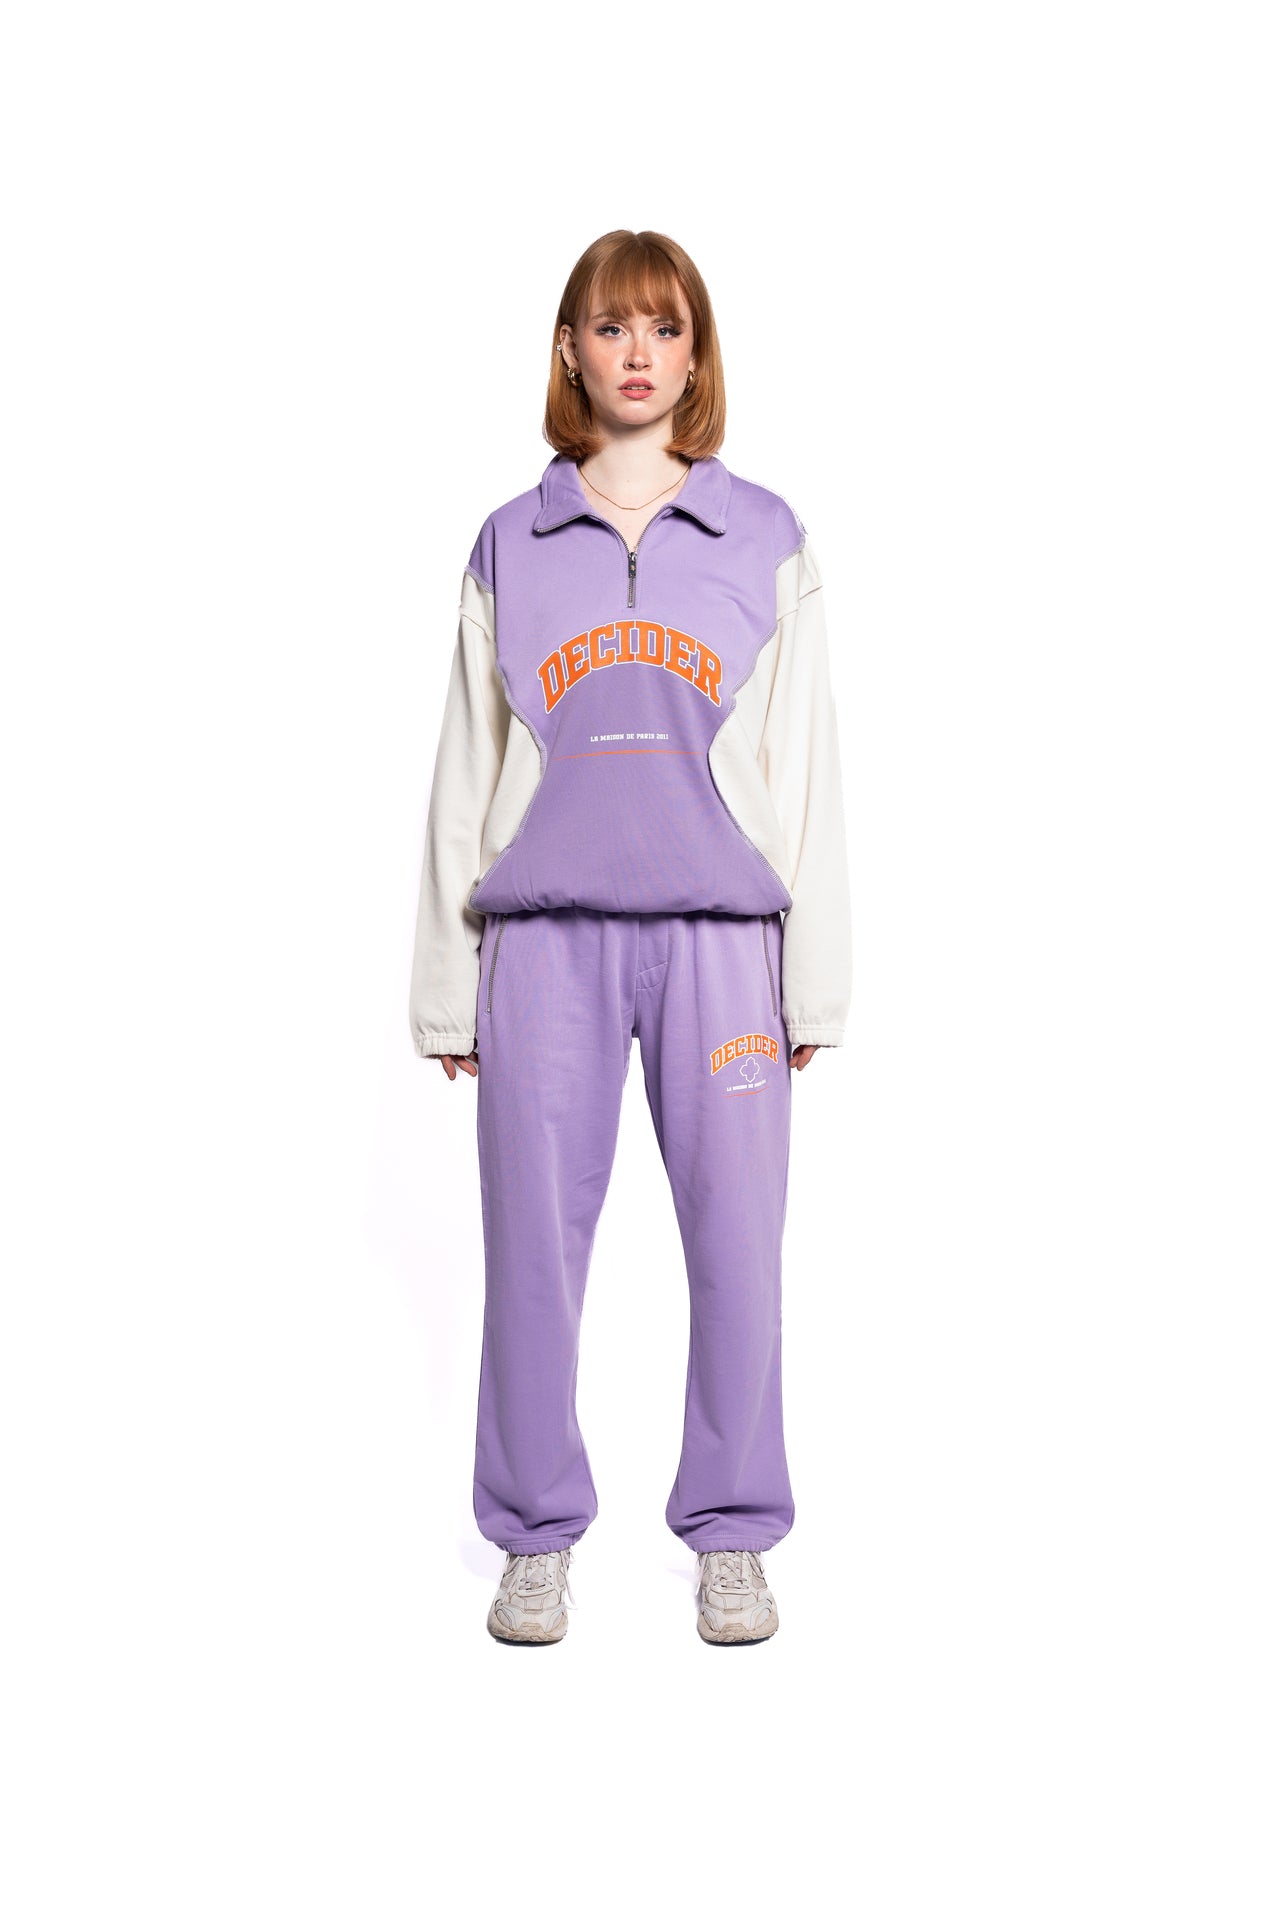 Frontansicht des Decider Streetwear-Looks mit einer Frau in pastell-lila Sweatpants und Pullover, vereint Komfort und Style für den Alltag.